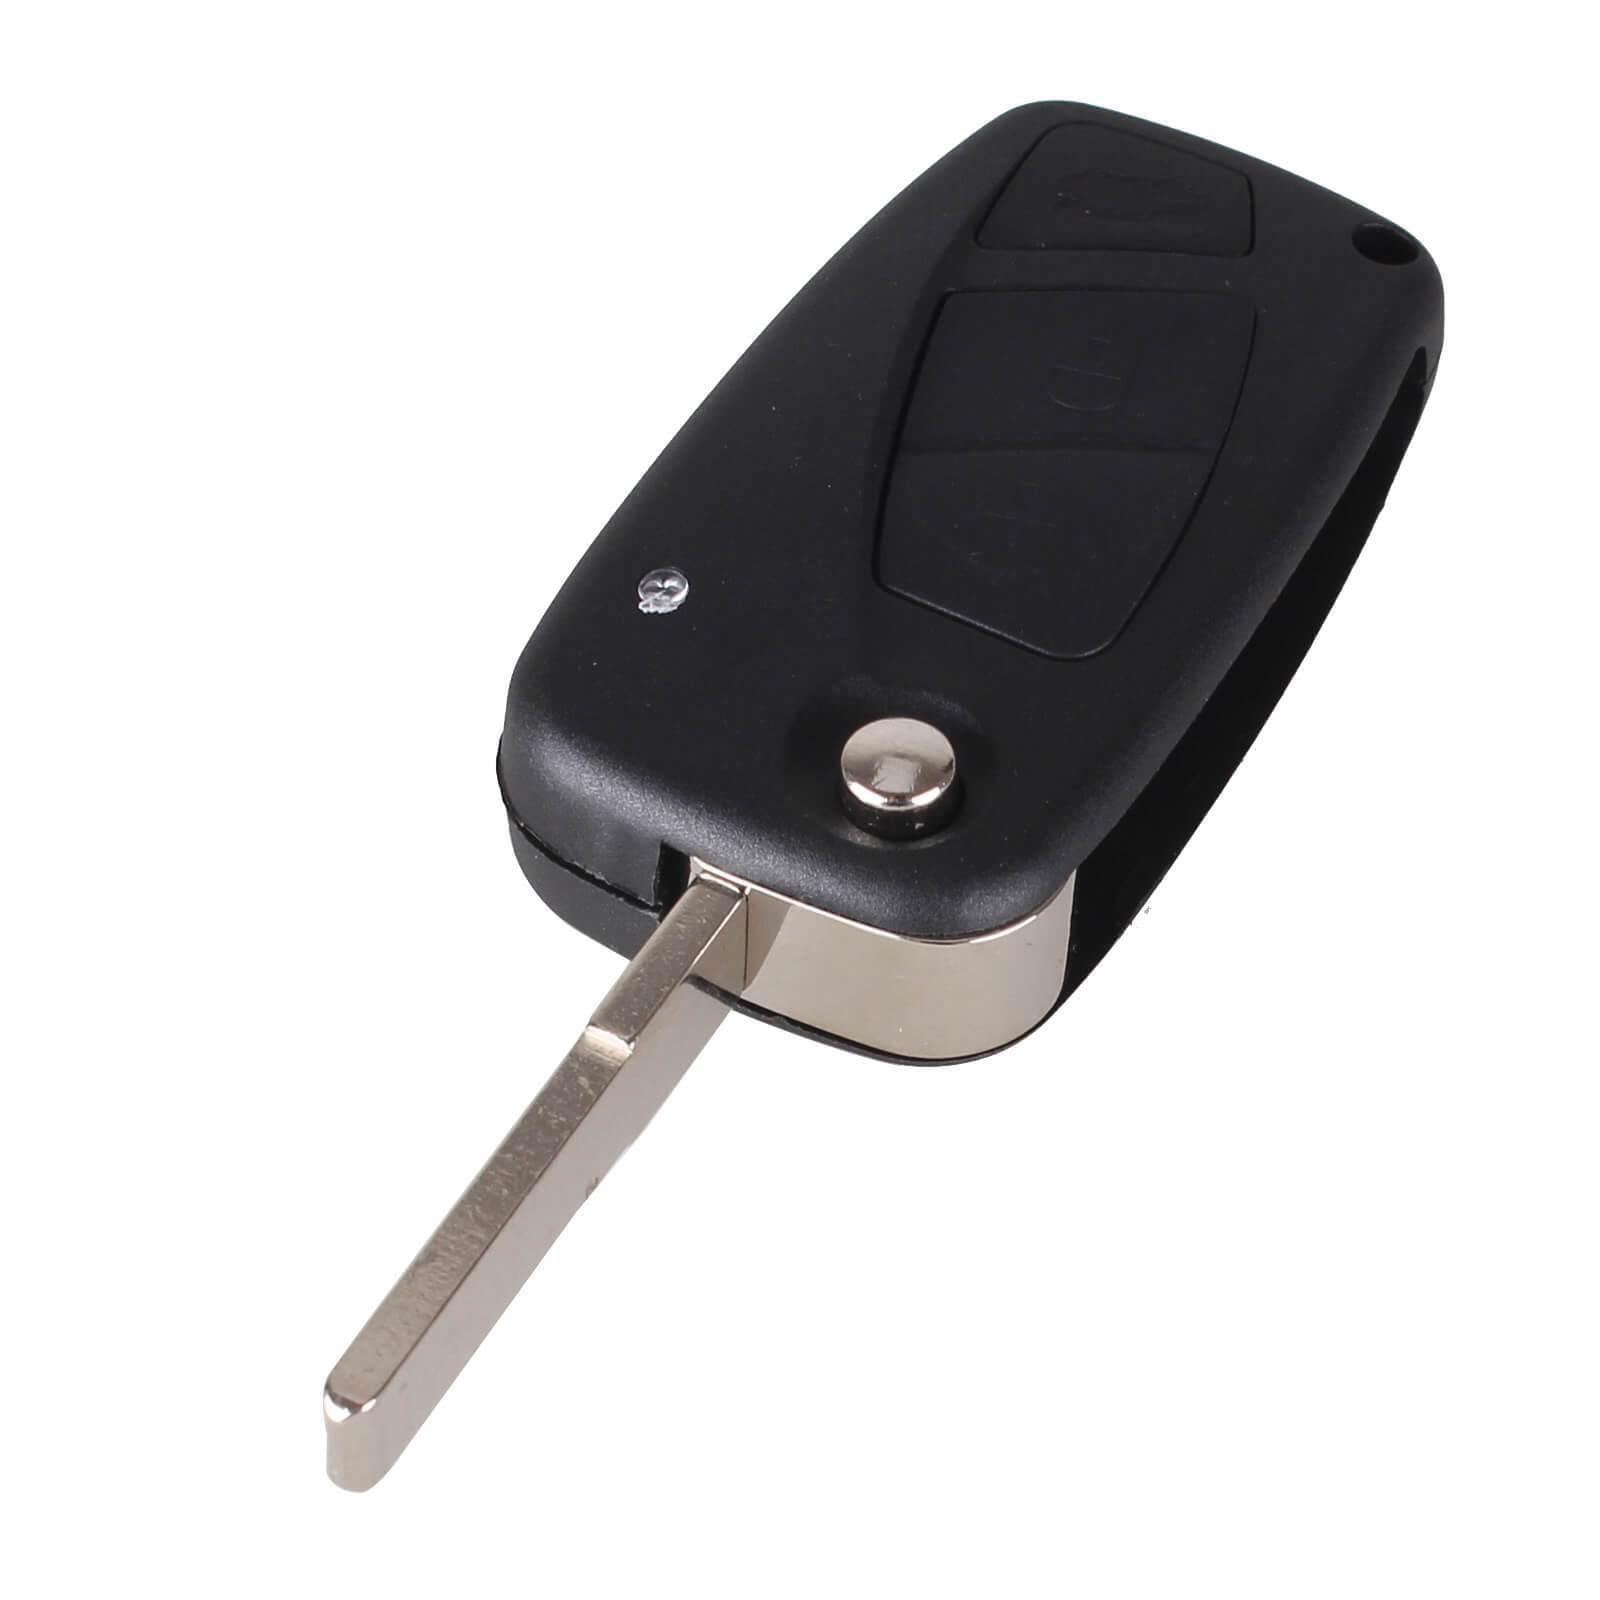 Fekete színű, 3 gombos Ford kulcsház, bicskakulcs nyers kulcsszárral.